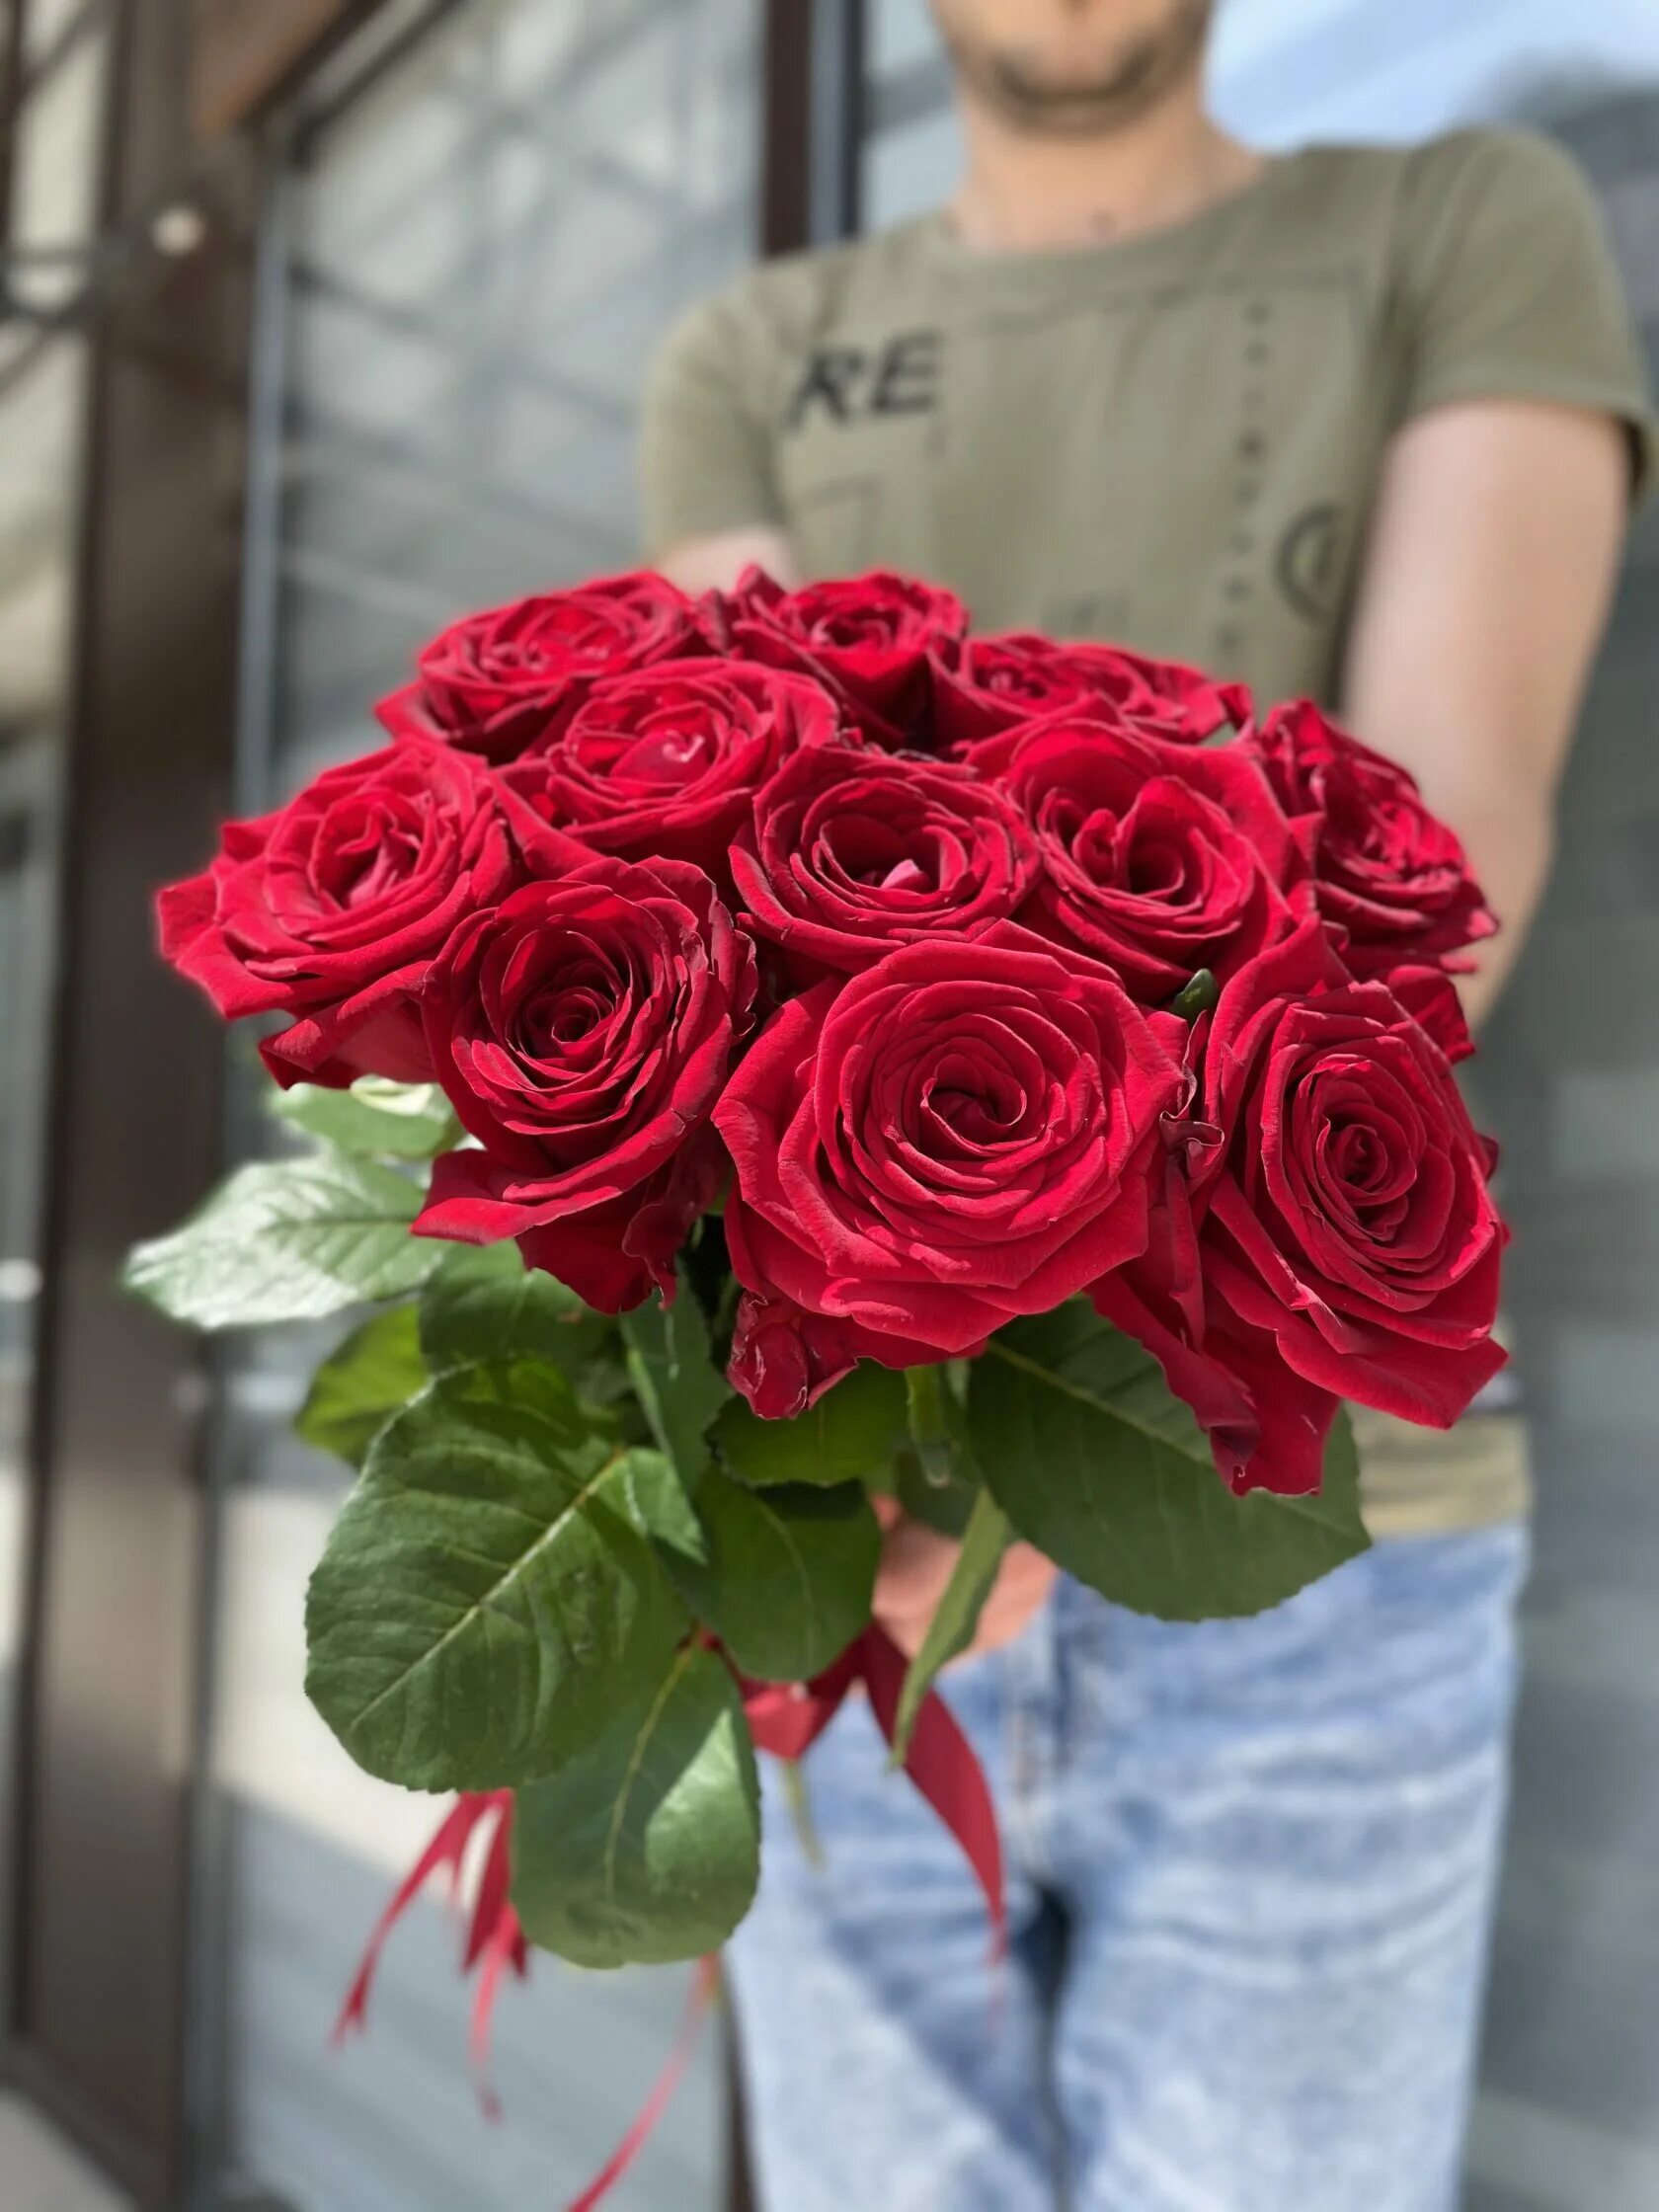 Купить 60 роз. 11 Красных роз 60 см. Букет из 11 красных роз. Букет из 11 красных роз 60см.